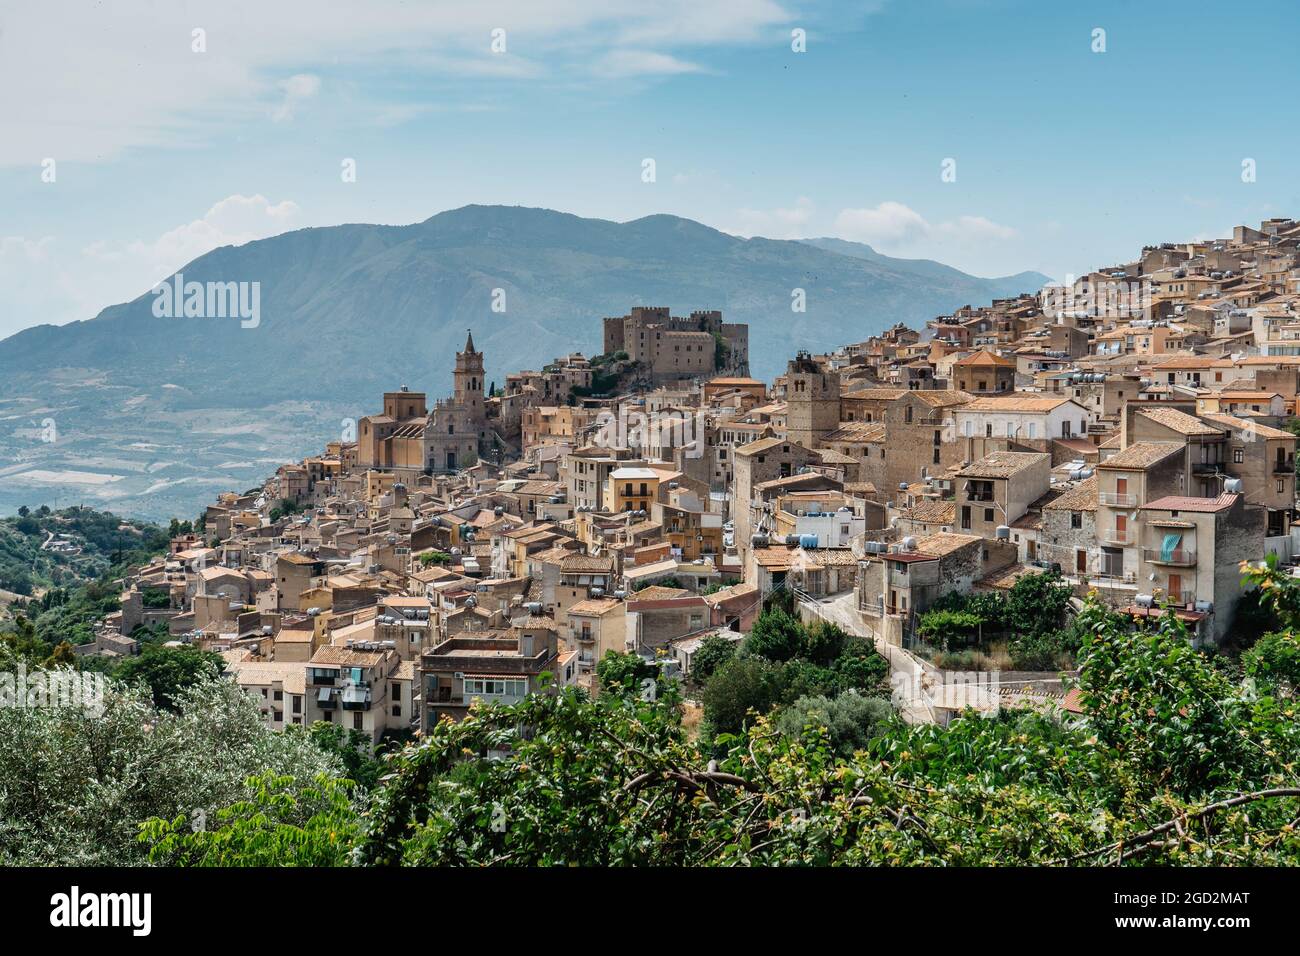 Caccamo, Sicile, Italie. Vue sur la ville médiévale populaire au sommet d'une colline avec un impressionnant château normand et la campagne environnante. Paysage italien. Pittoresque Banque D'Images